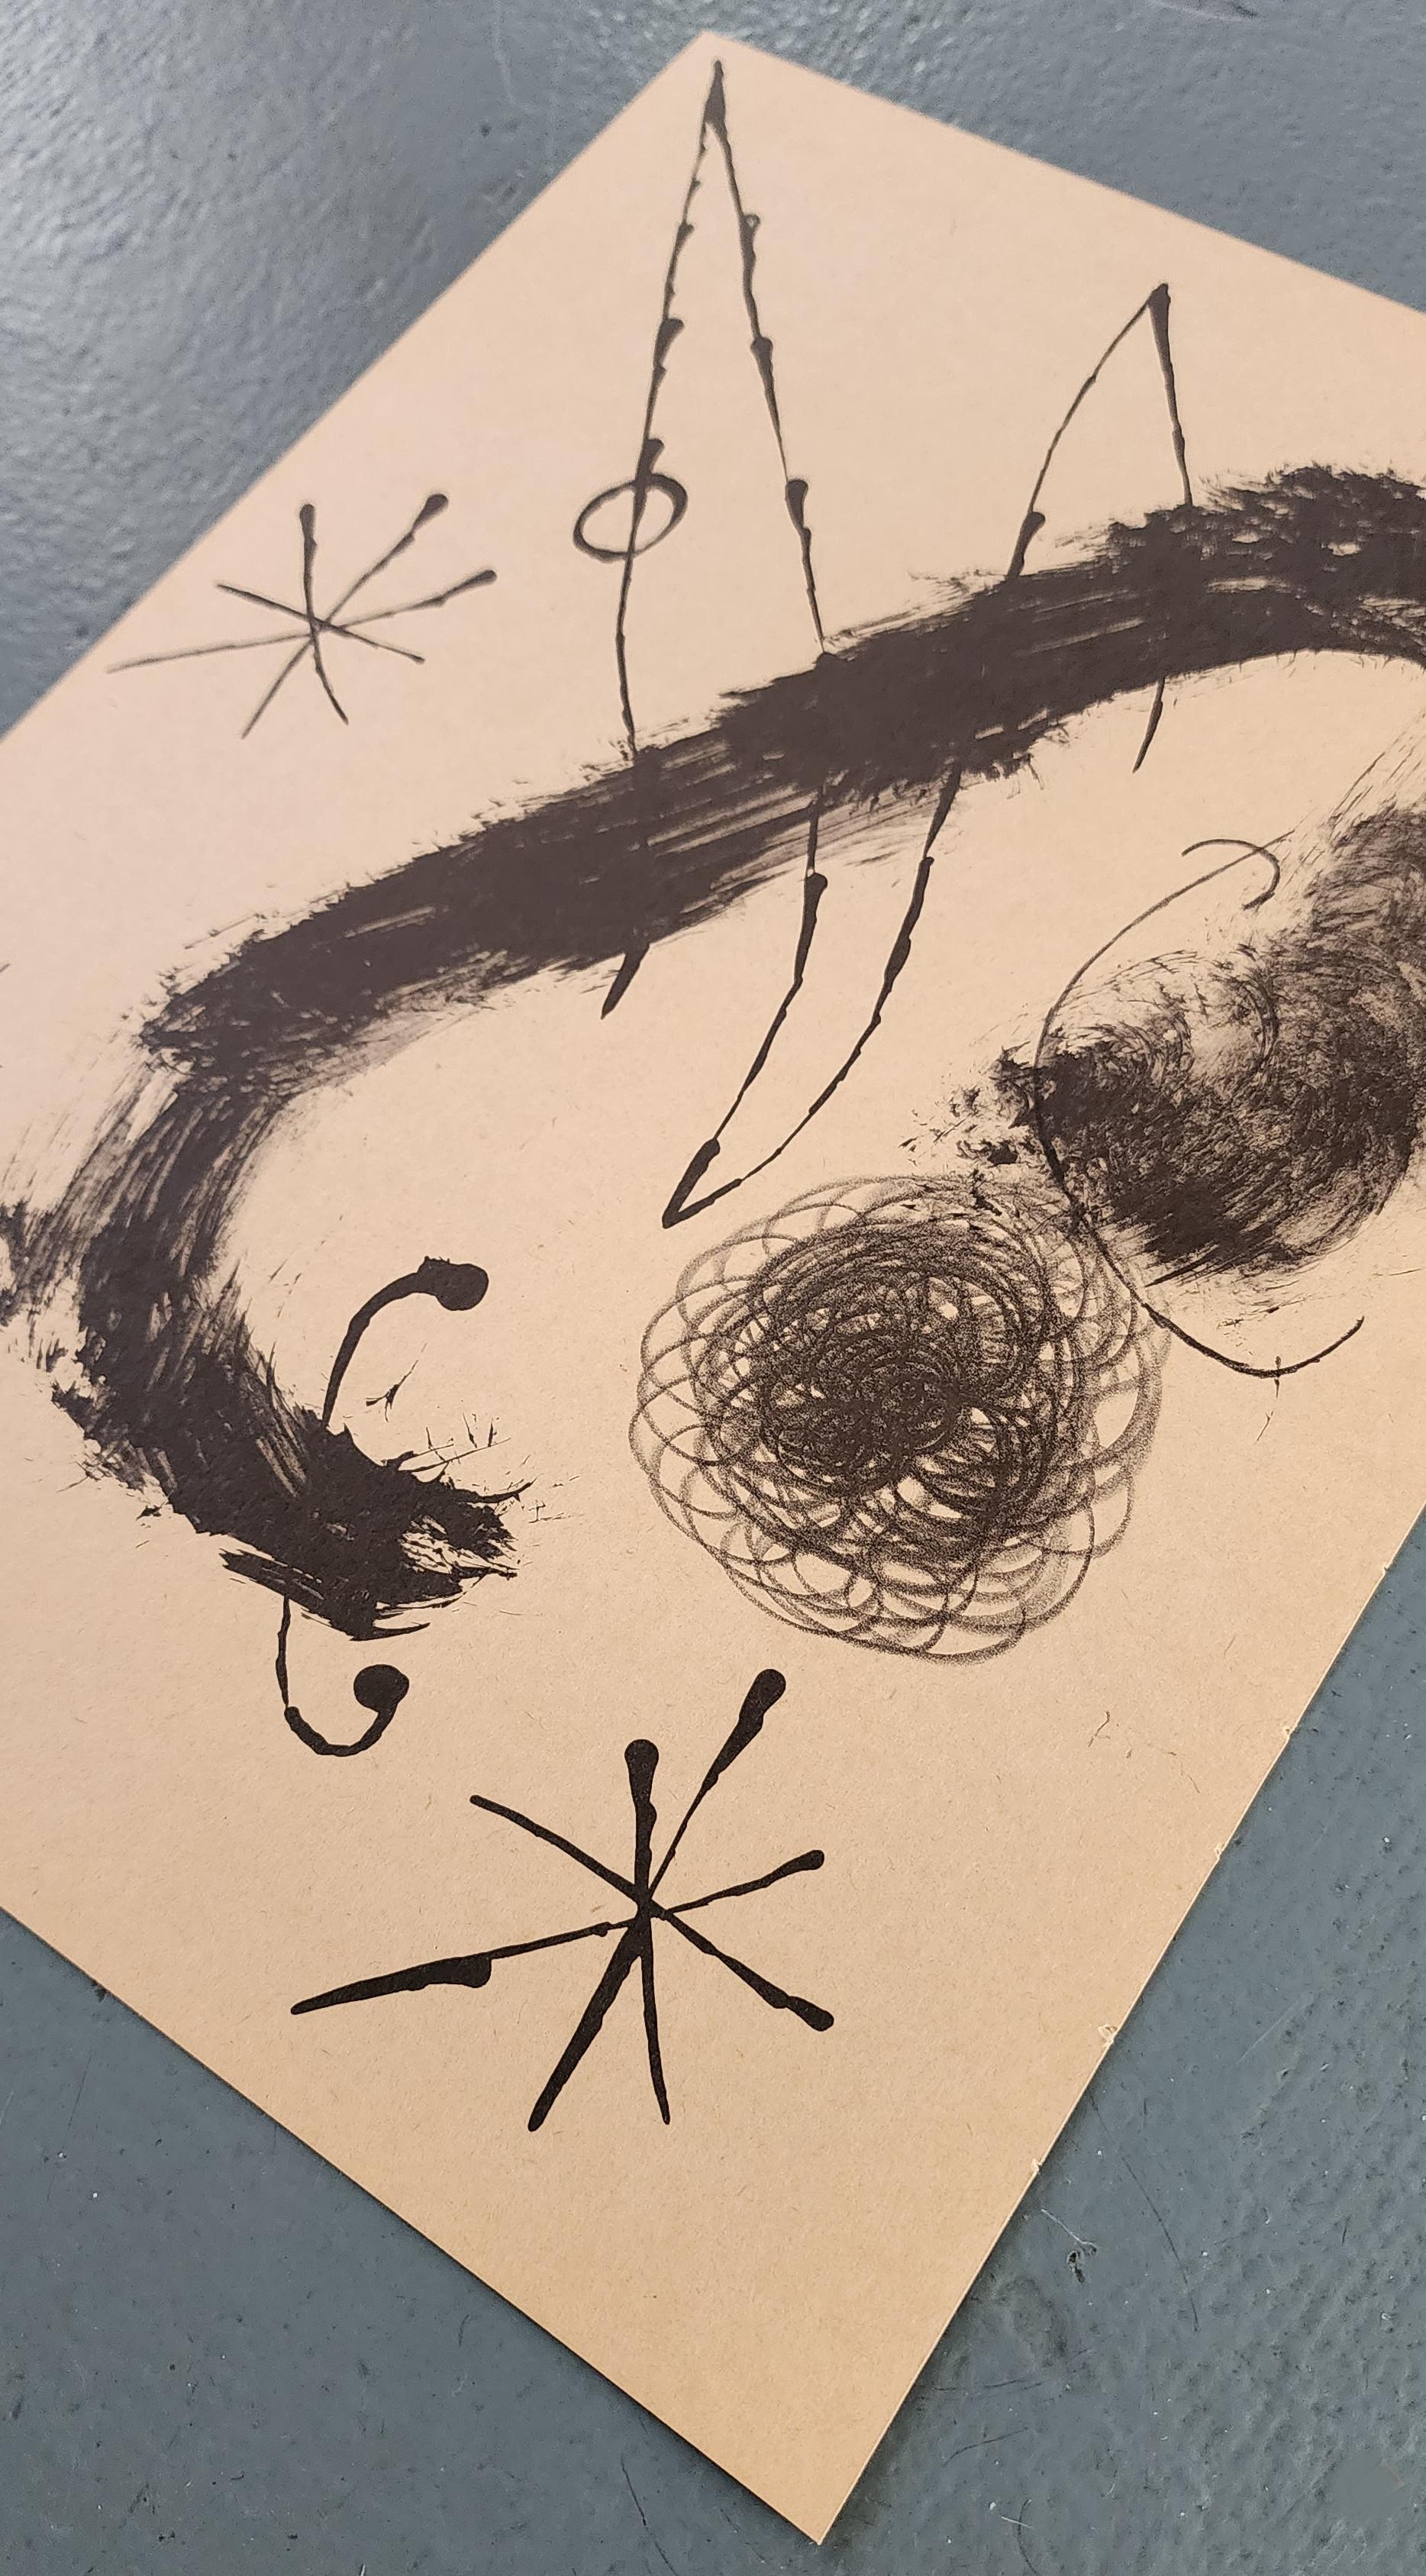 Lithographier Originale (Les Peintures Sur Carton) (Abstrakt, lustig, gestisch) (Abstrakter Expressionismus), Print, von Joan Miró